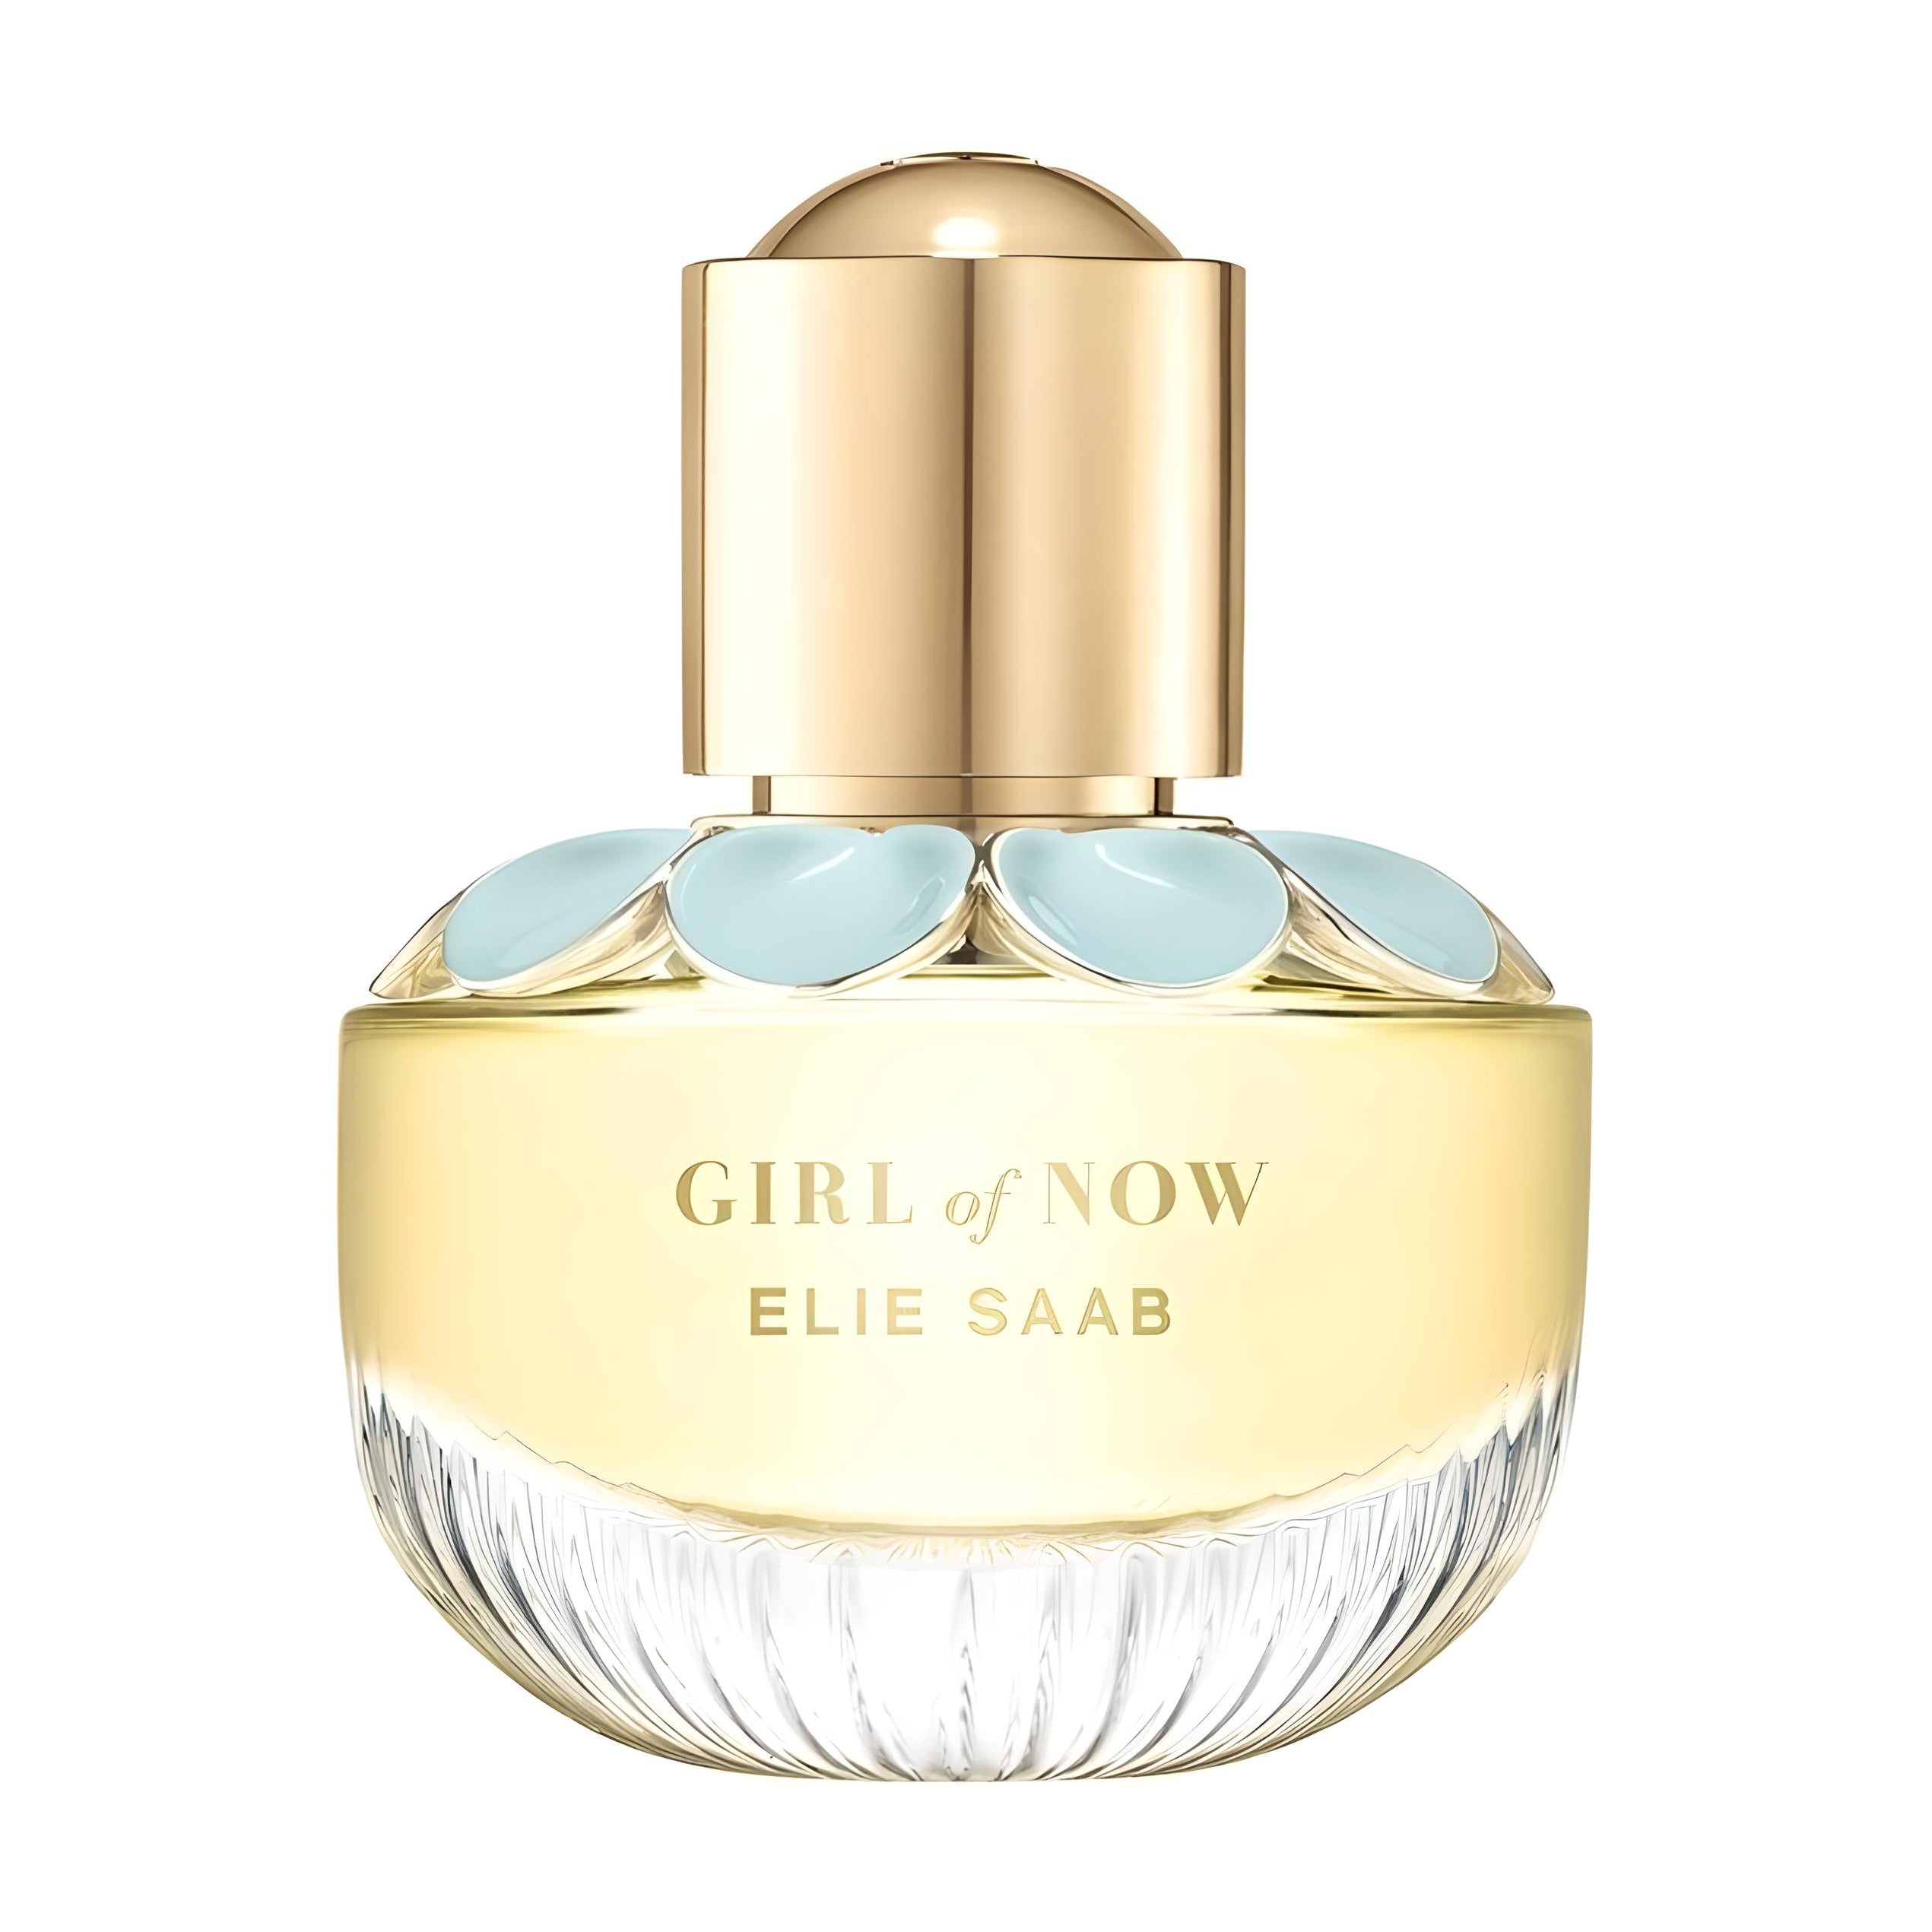 GIRL OF NOW Eau de Parfum